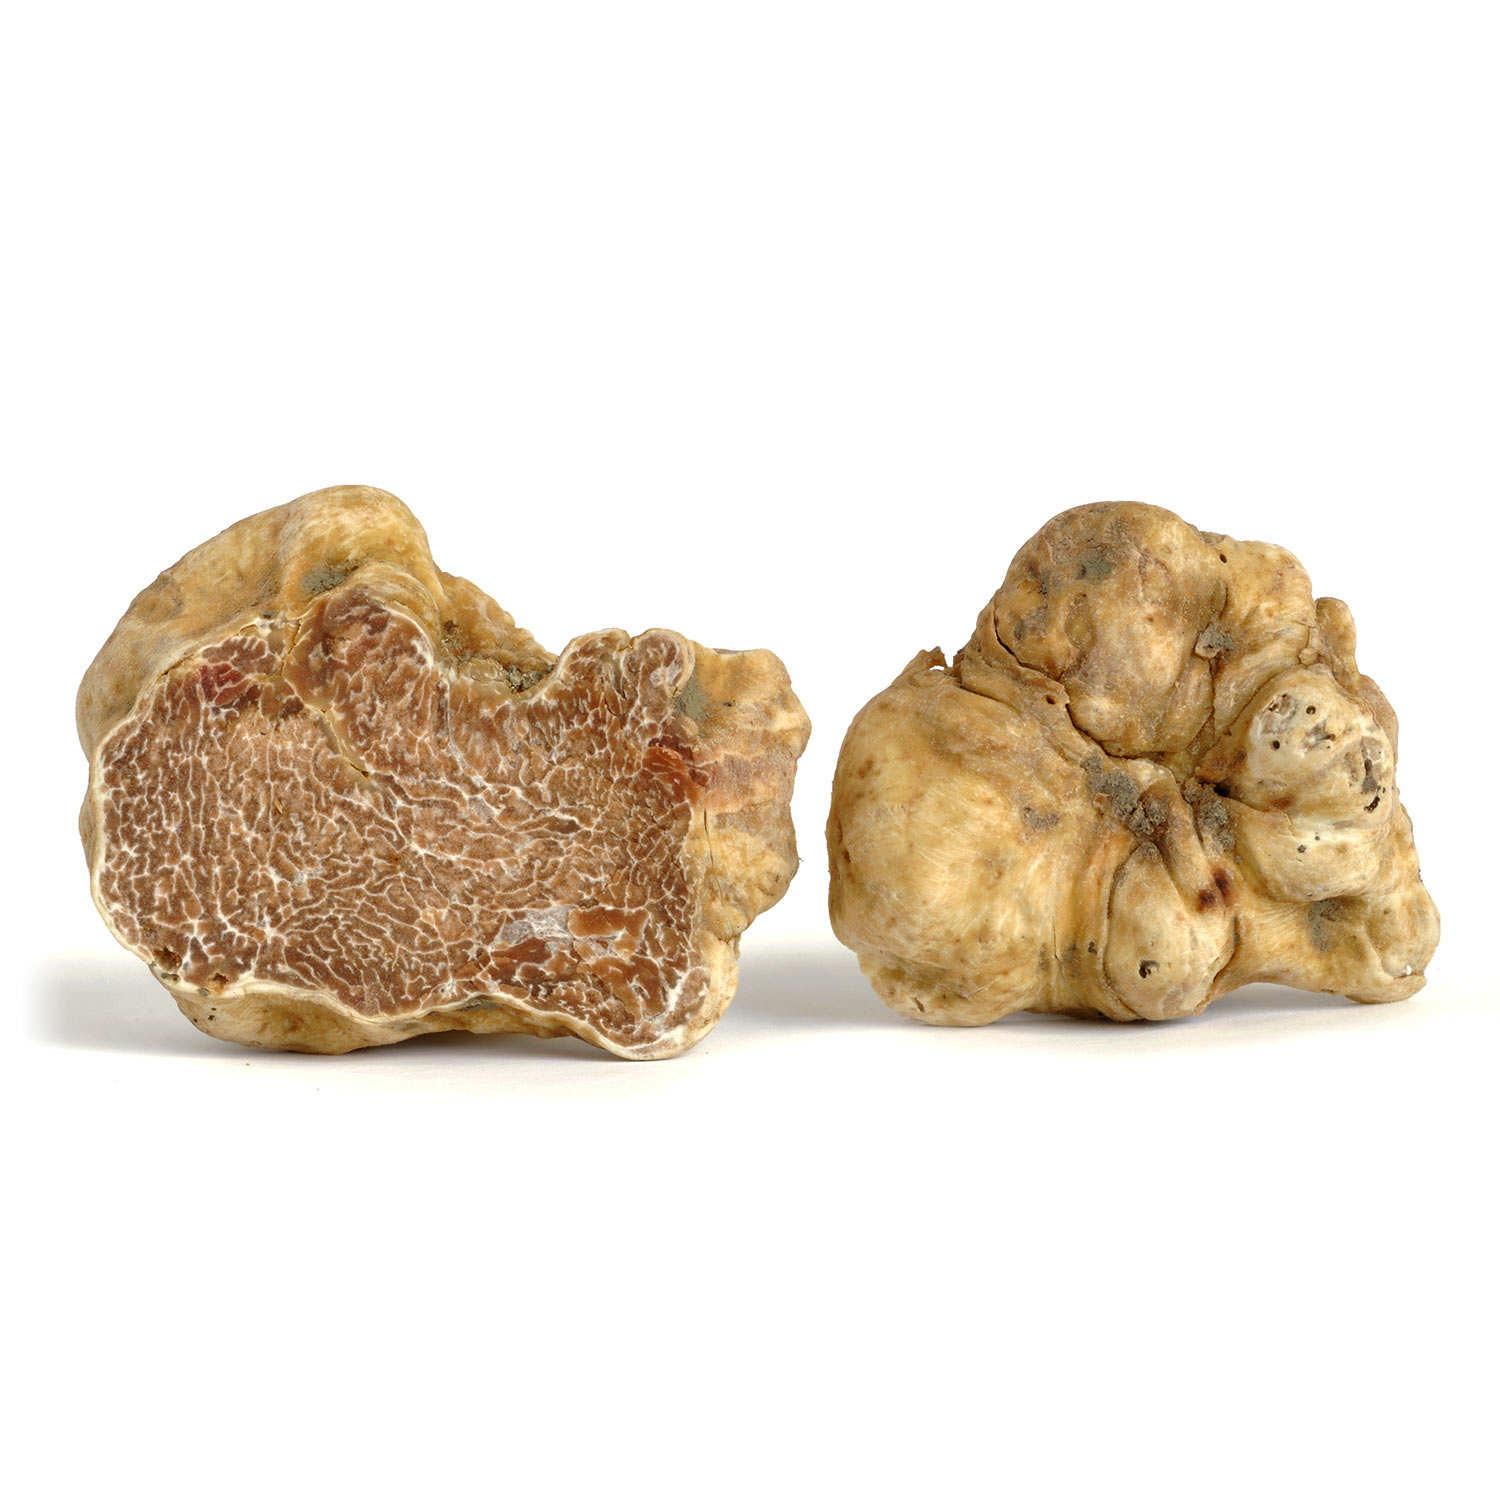 fresh white truffle magnatum pico 100 gr / 4 oz